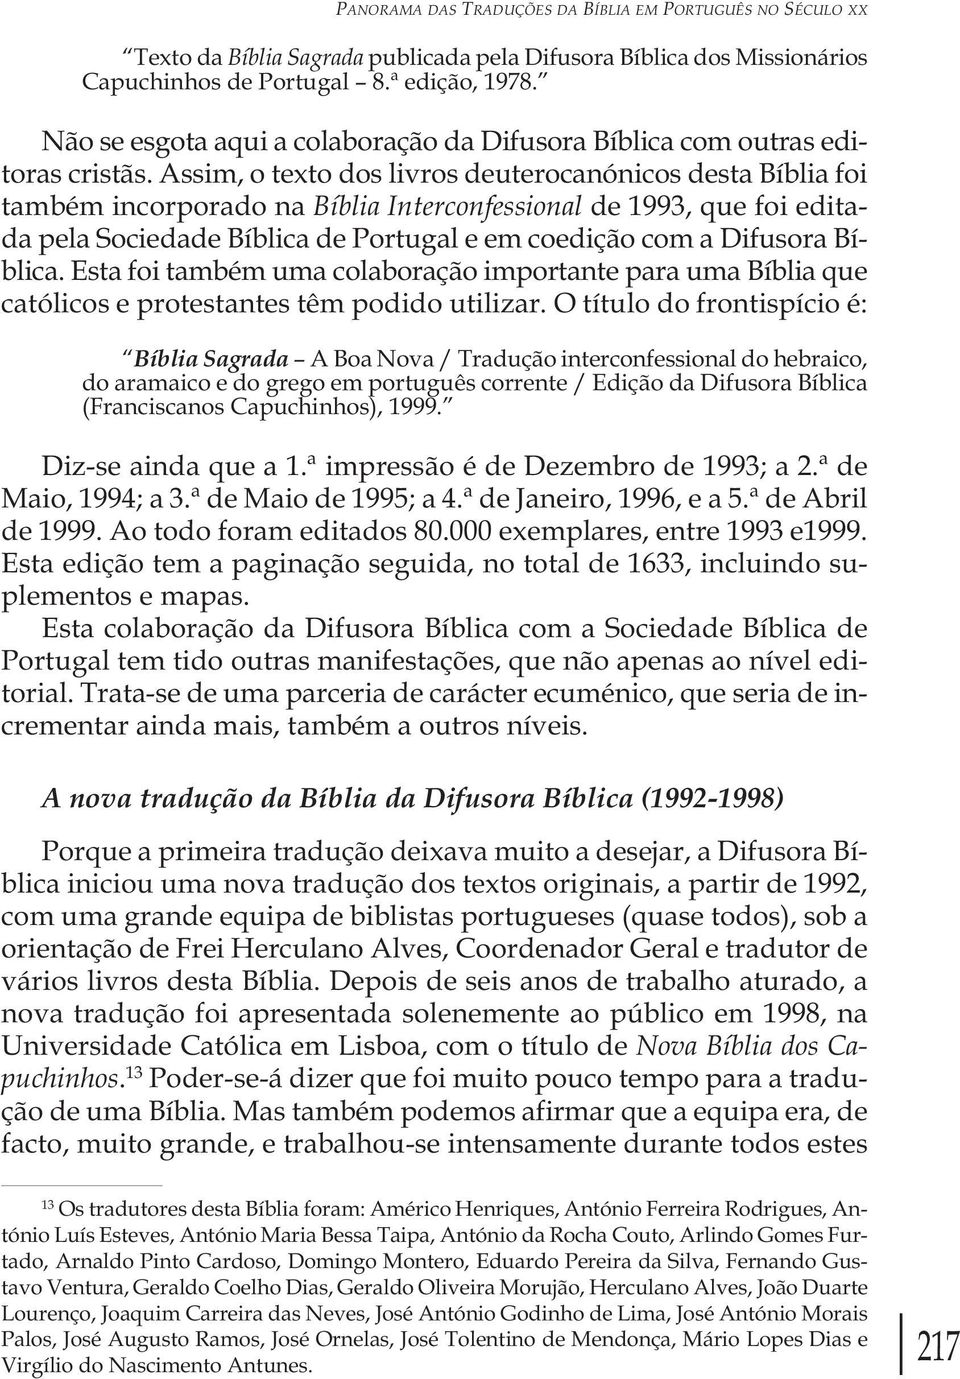 Assim, o texto dos livros deuterocanónicos desta Bíblia foi também incorporado na Bíblia Interconfessional de 1993, que foi editada pela Sociedade Bíblica de Portugal e em coedição com a Difusora